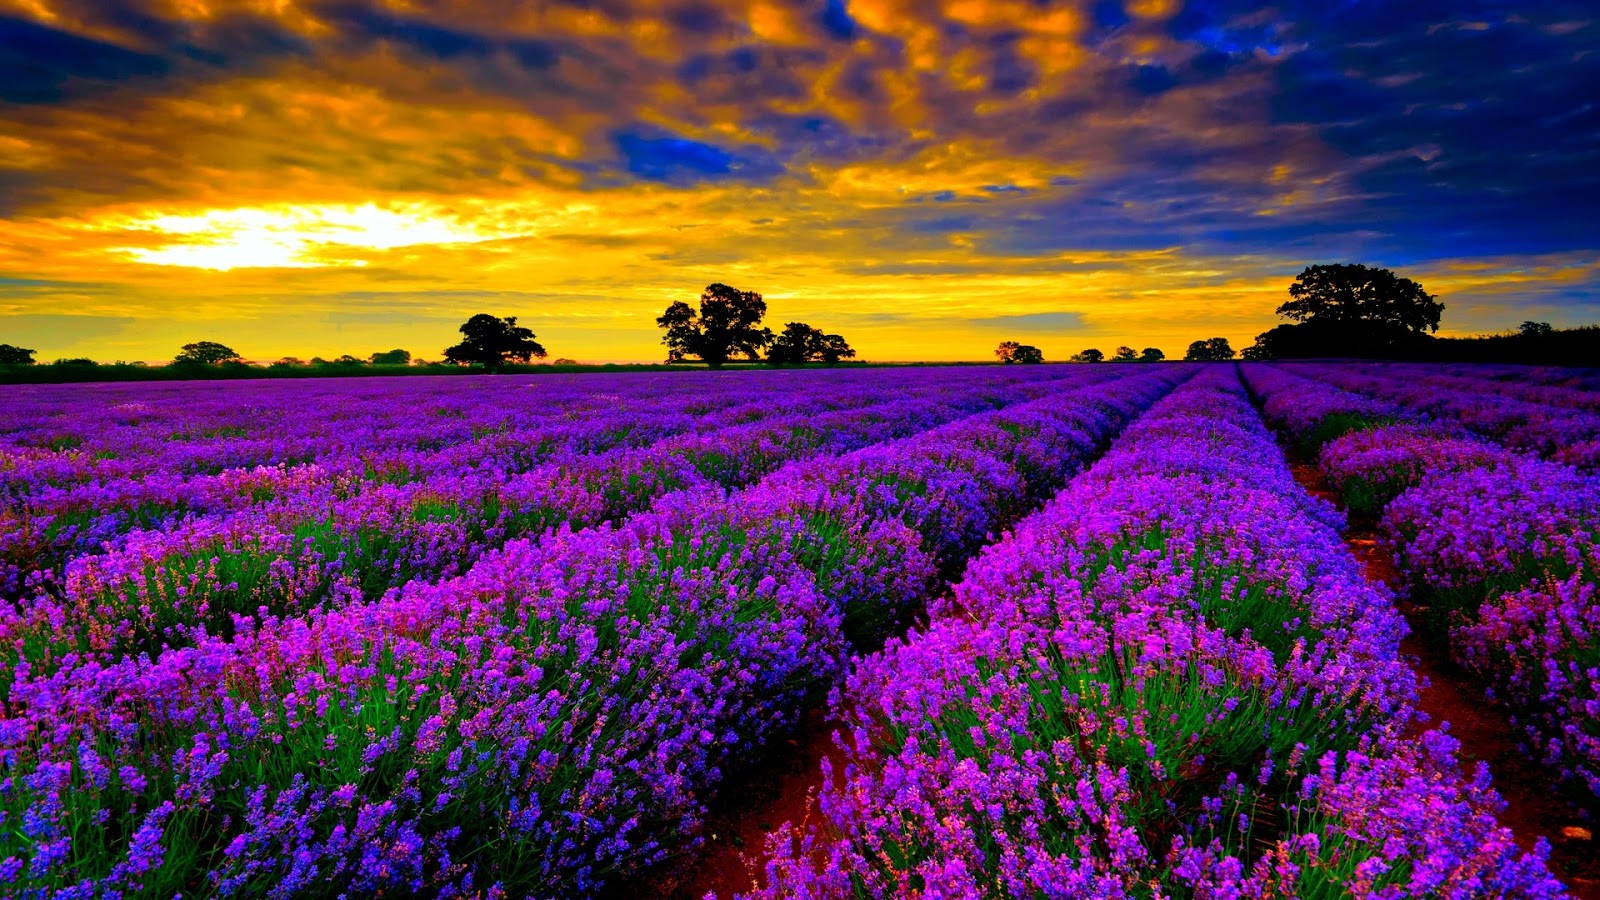 19 Hình ảnh hoa màu tím đẹp làm hình nền đẹp  Hình Ảnh Đẹp HD